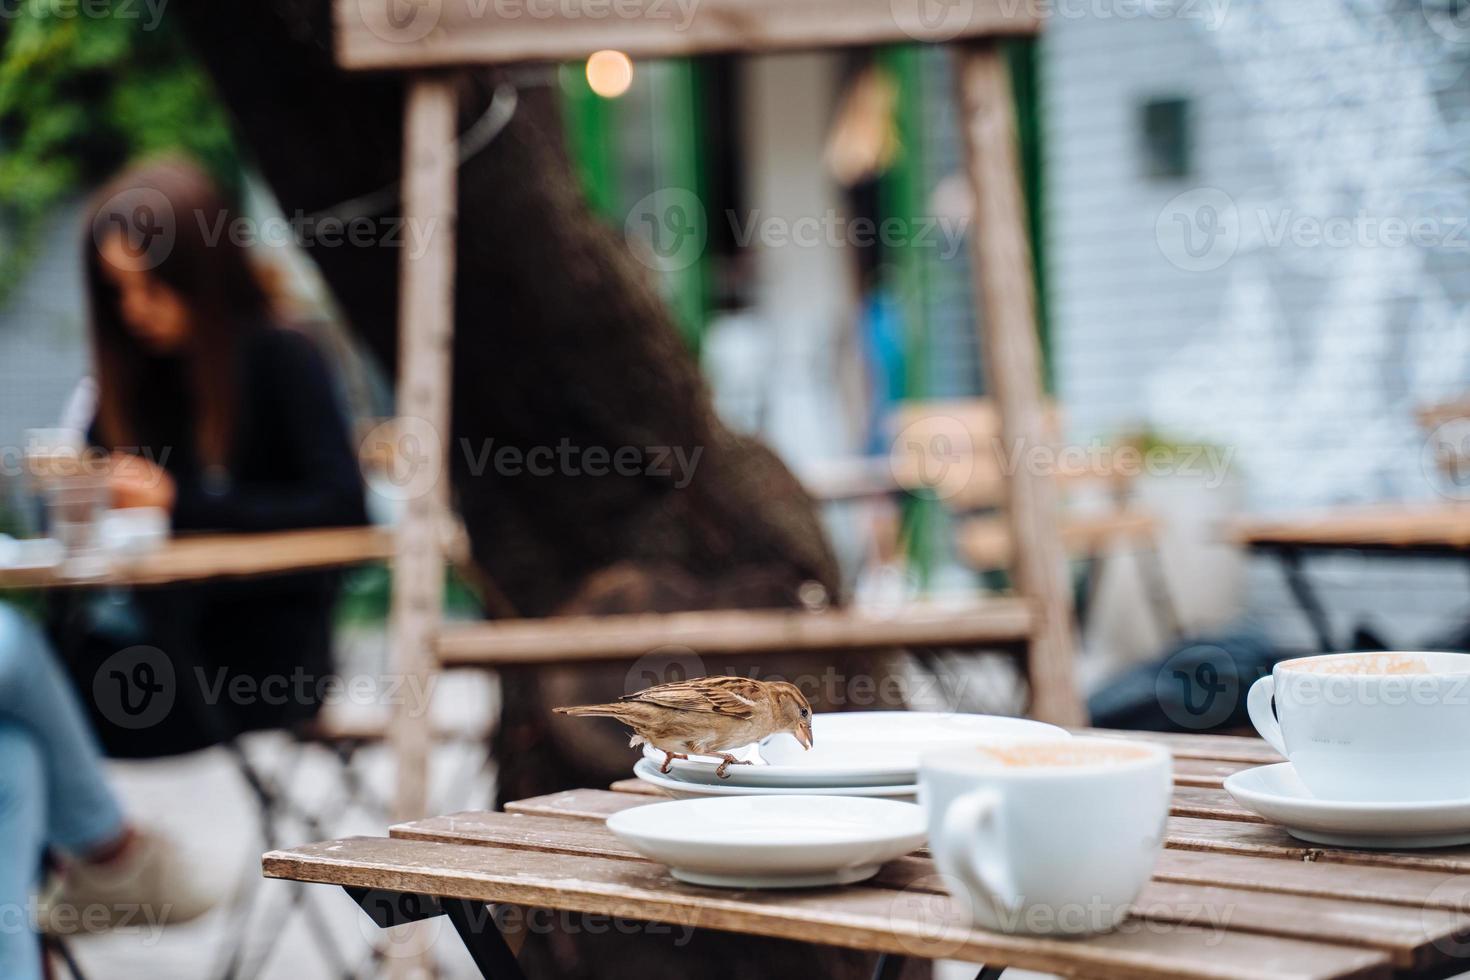 pássaro na cidade. pardal sentado na mesa no café ao ar livre foto